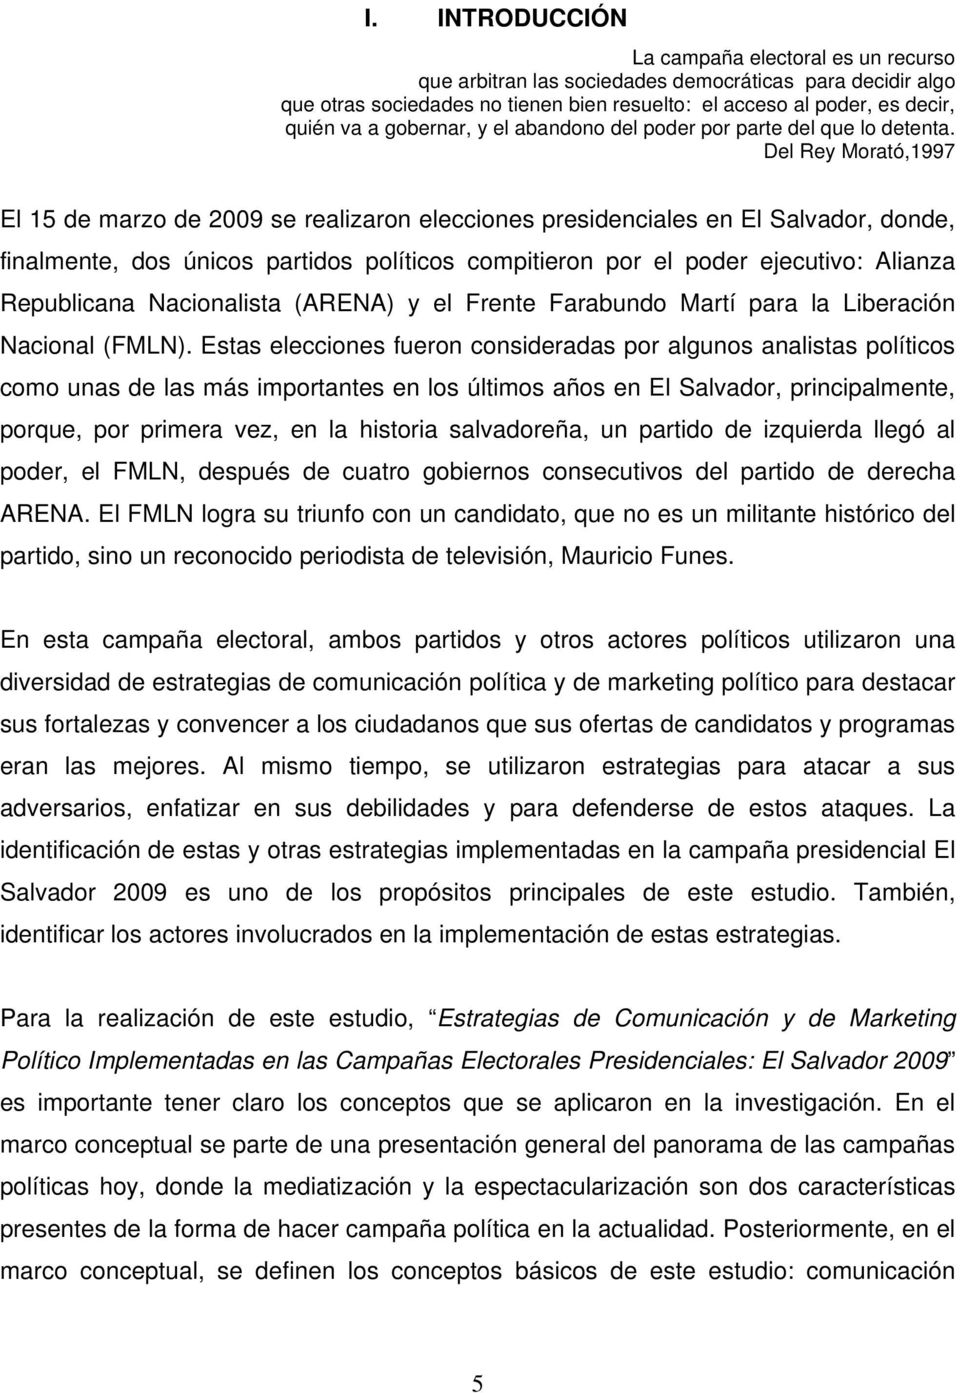 Del Rey Morató,1997 El 15 de marzo de 2009 se realizaron elecciones presidenciales en El Salvador, donde, finalmente, dos únicos partidos políticos compitieron por el poder ejecutivo: Alianza